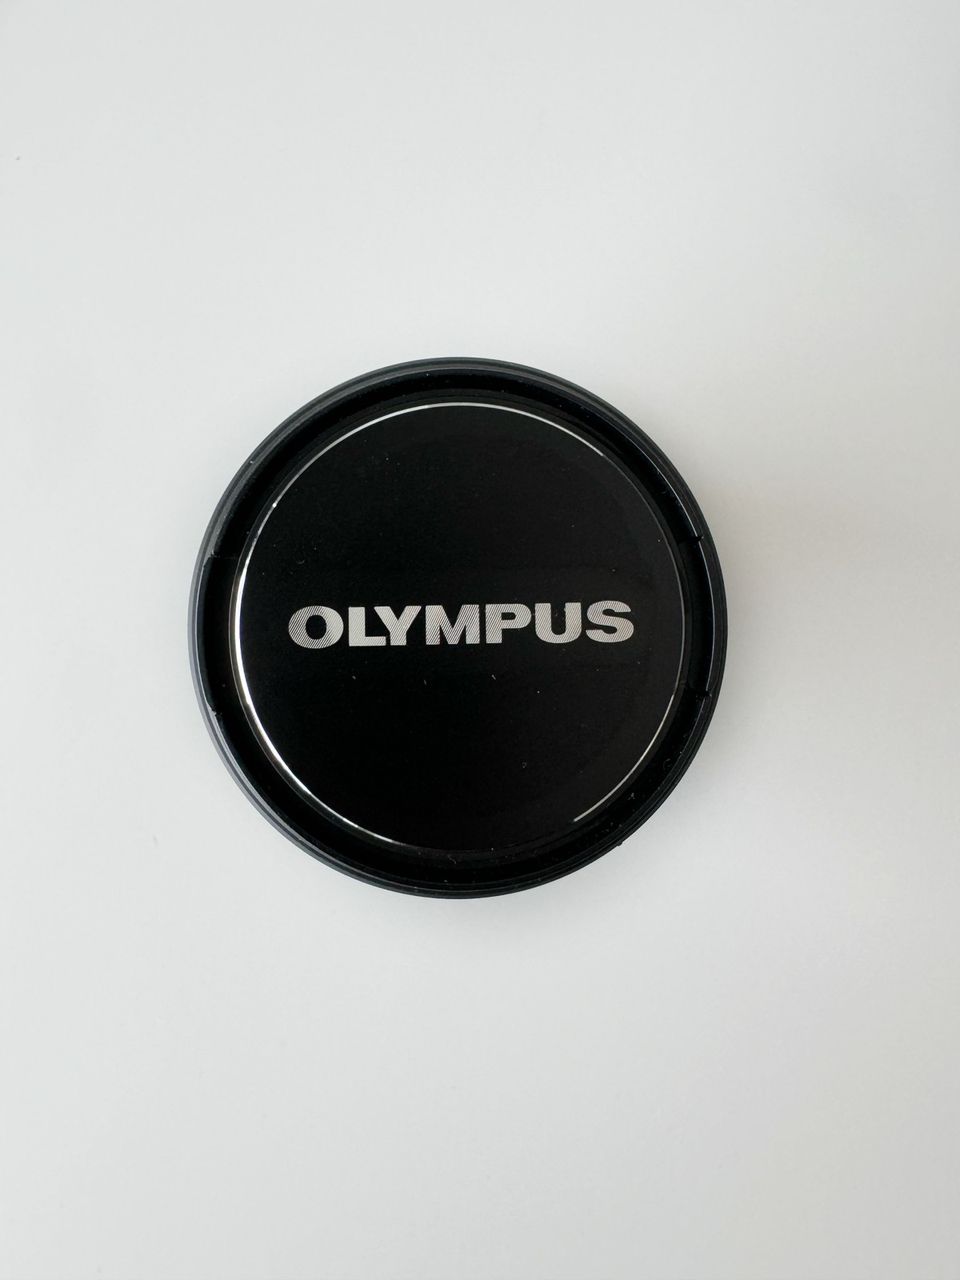 Olympus M.ZUIKO DIGITAL ED 30mm 1:3.5 MACRO